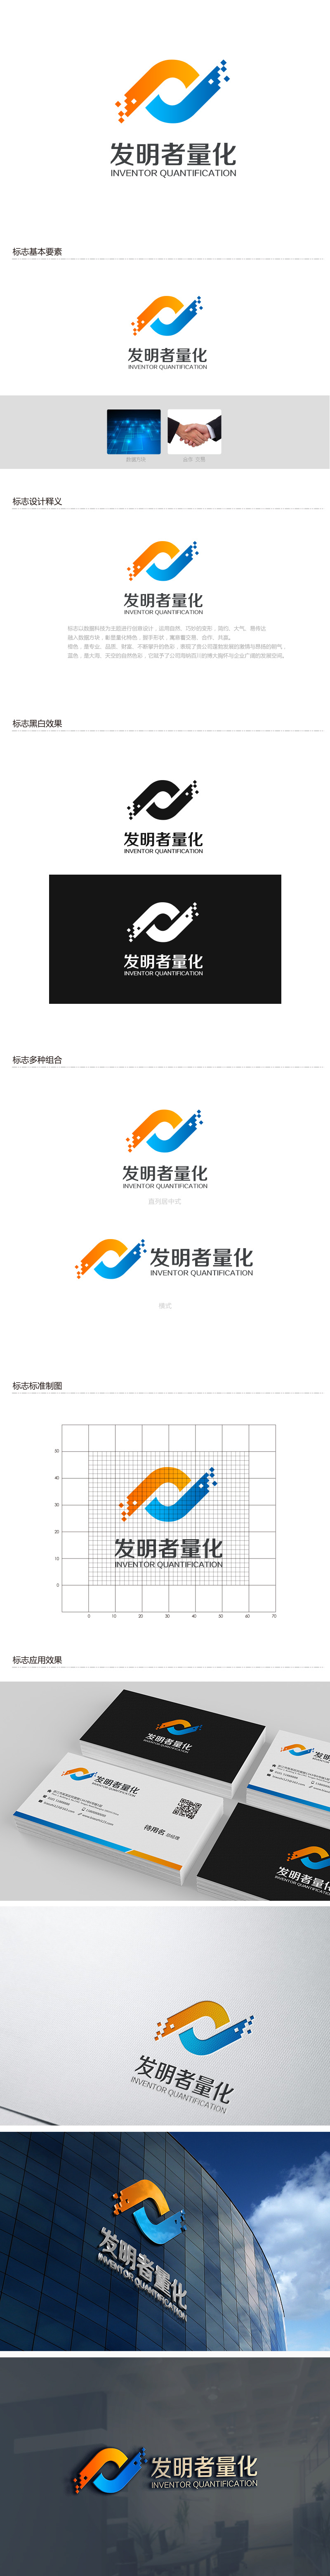 吴晓伟的发明者量化logo设计